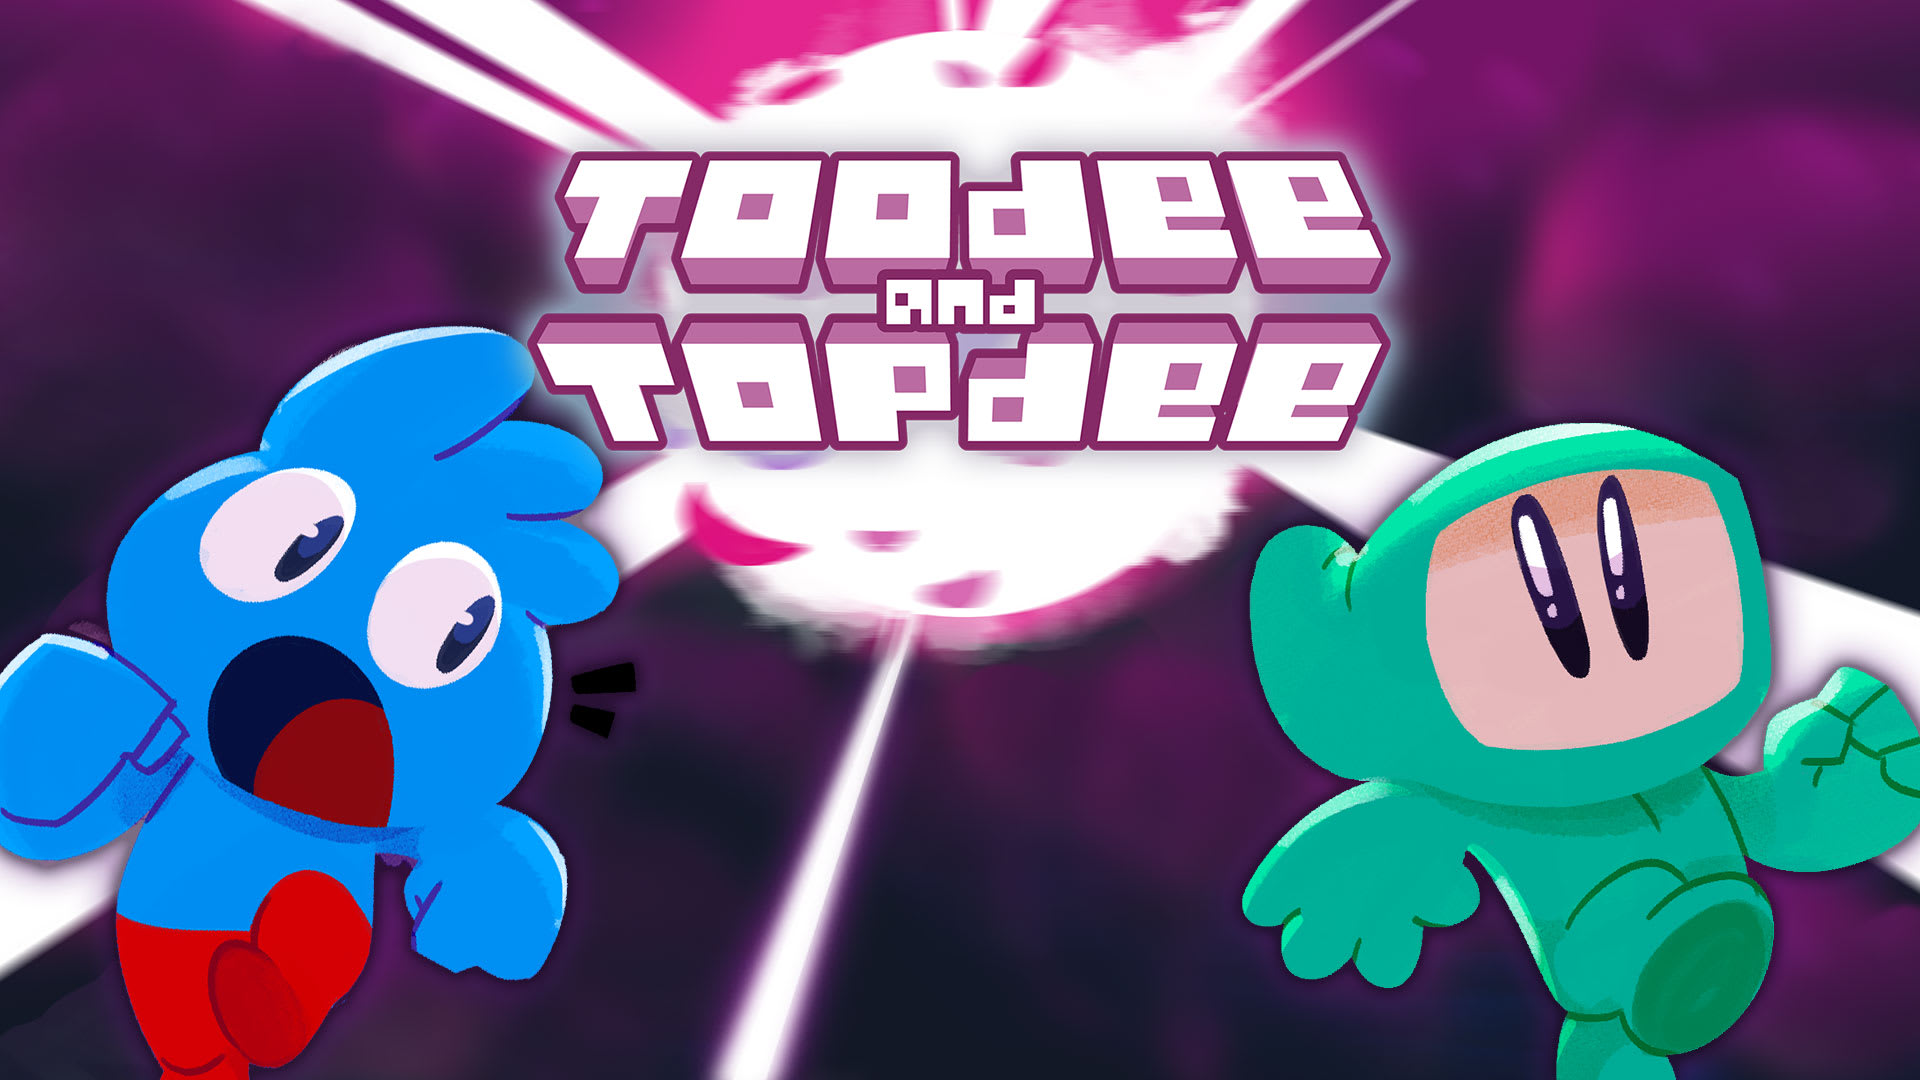 Toodee y Topdee